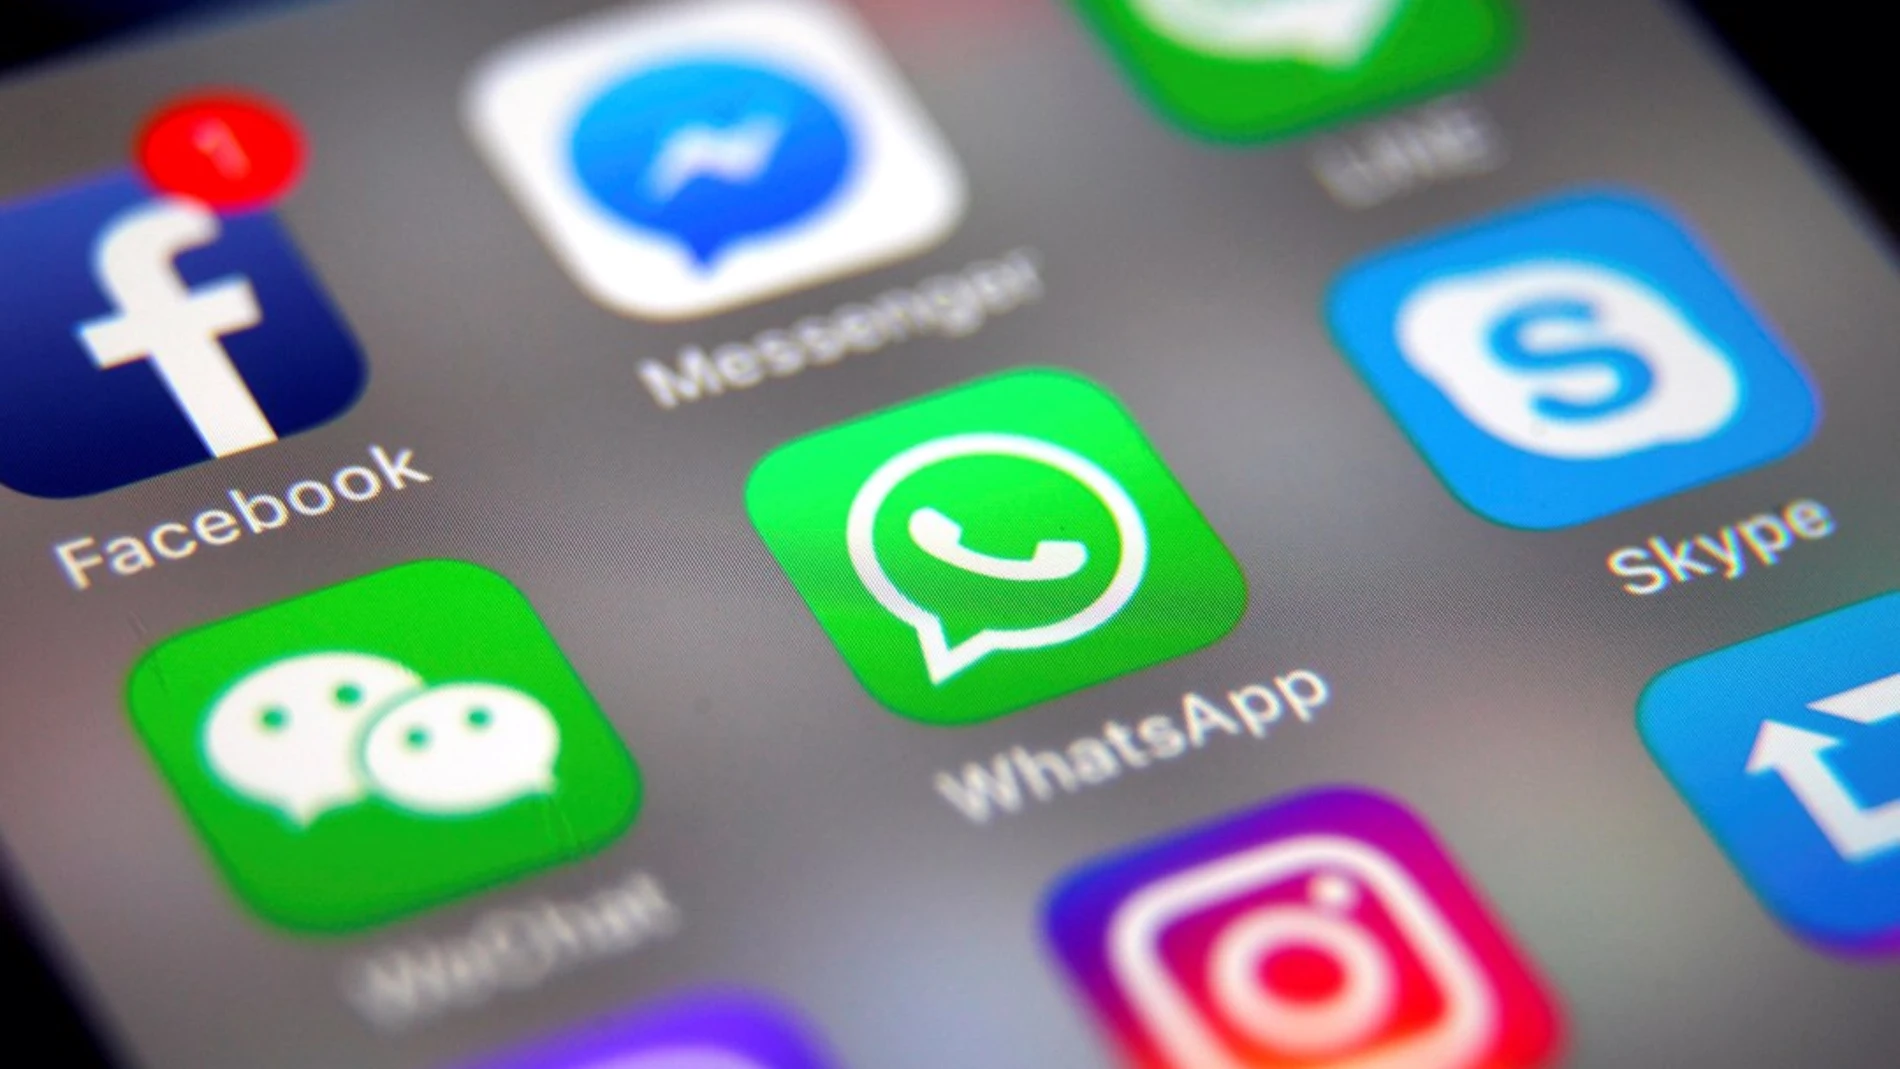 WhatsApp el método de comunicación favorito de los jóvenes